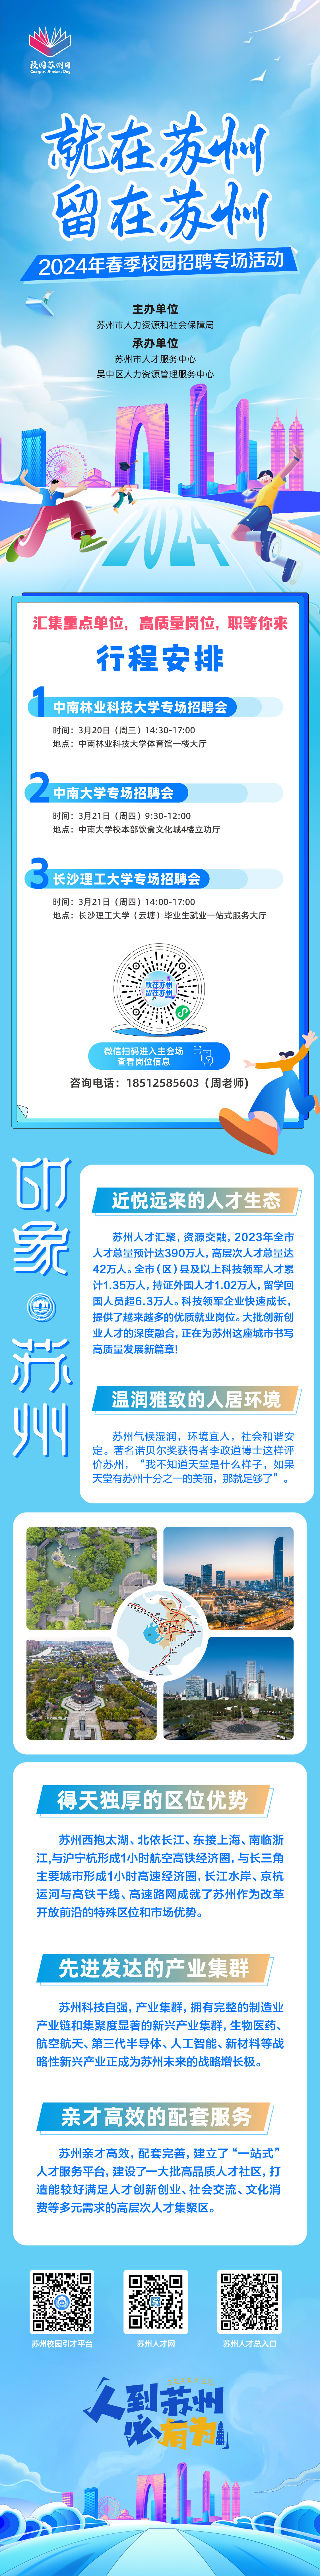 2024年吴中长沙线宣传长图.jpg